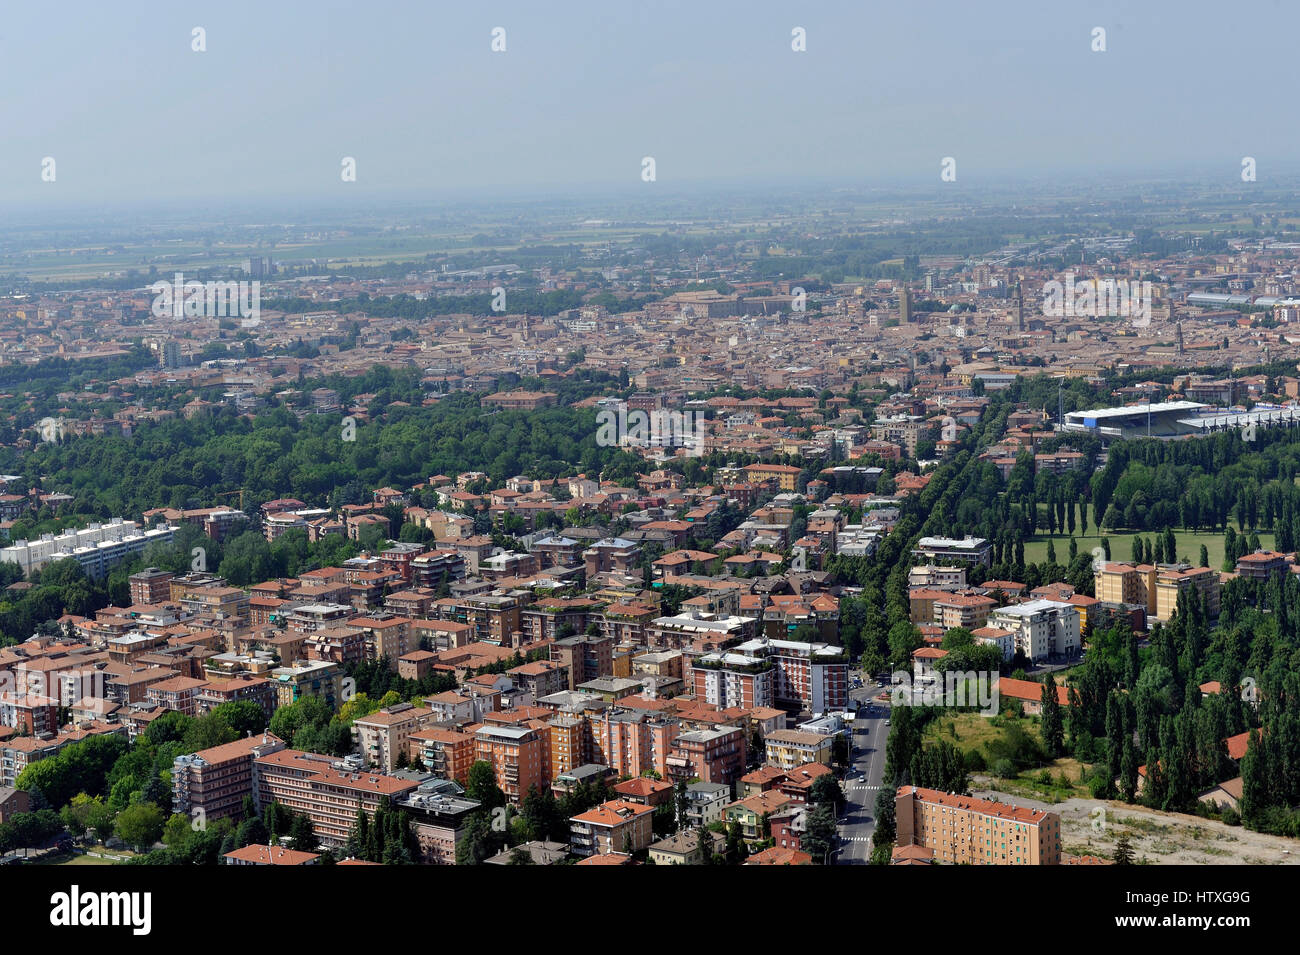 Luftaufnahme von Parma mit Piazza del Duomo, der Dom, das Baptisterium; Pilotta, Taro, Tardini - Emilia Romagna Region, Italien Stockfoto